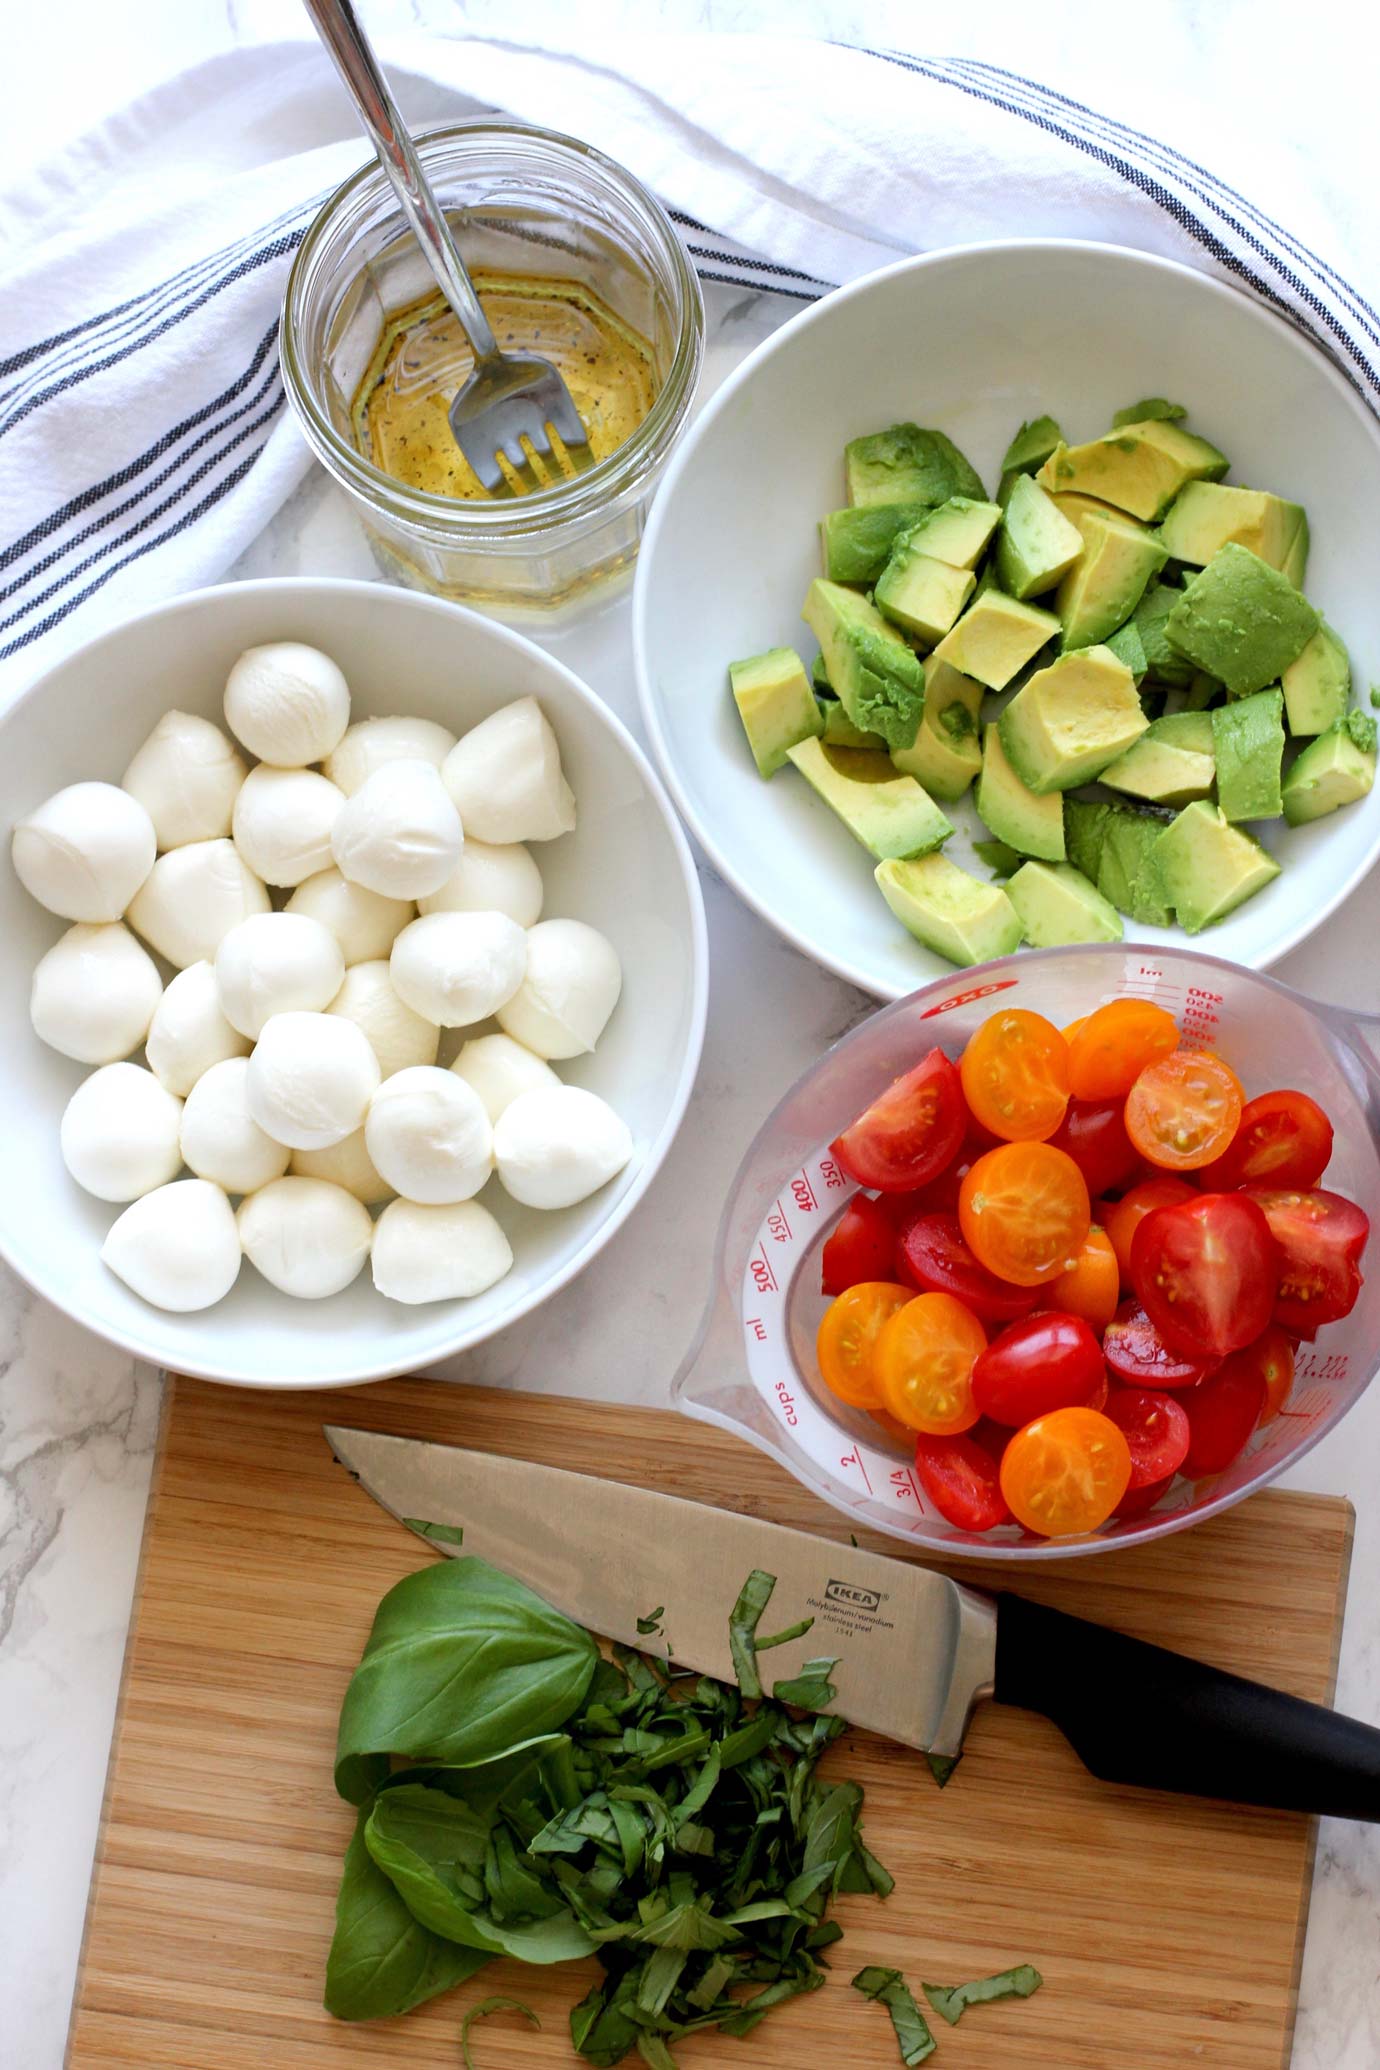 Ingredients to make a tomato mozzarella avocado salad.